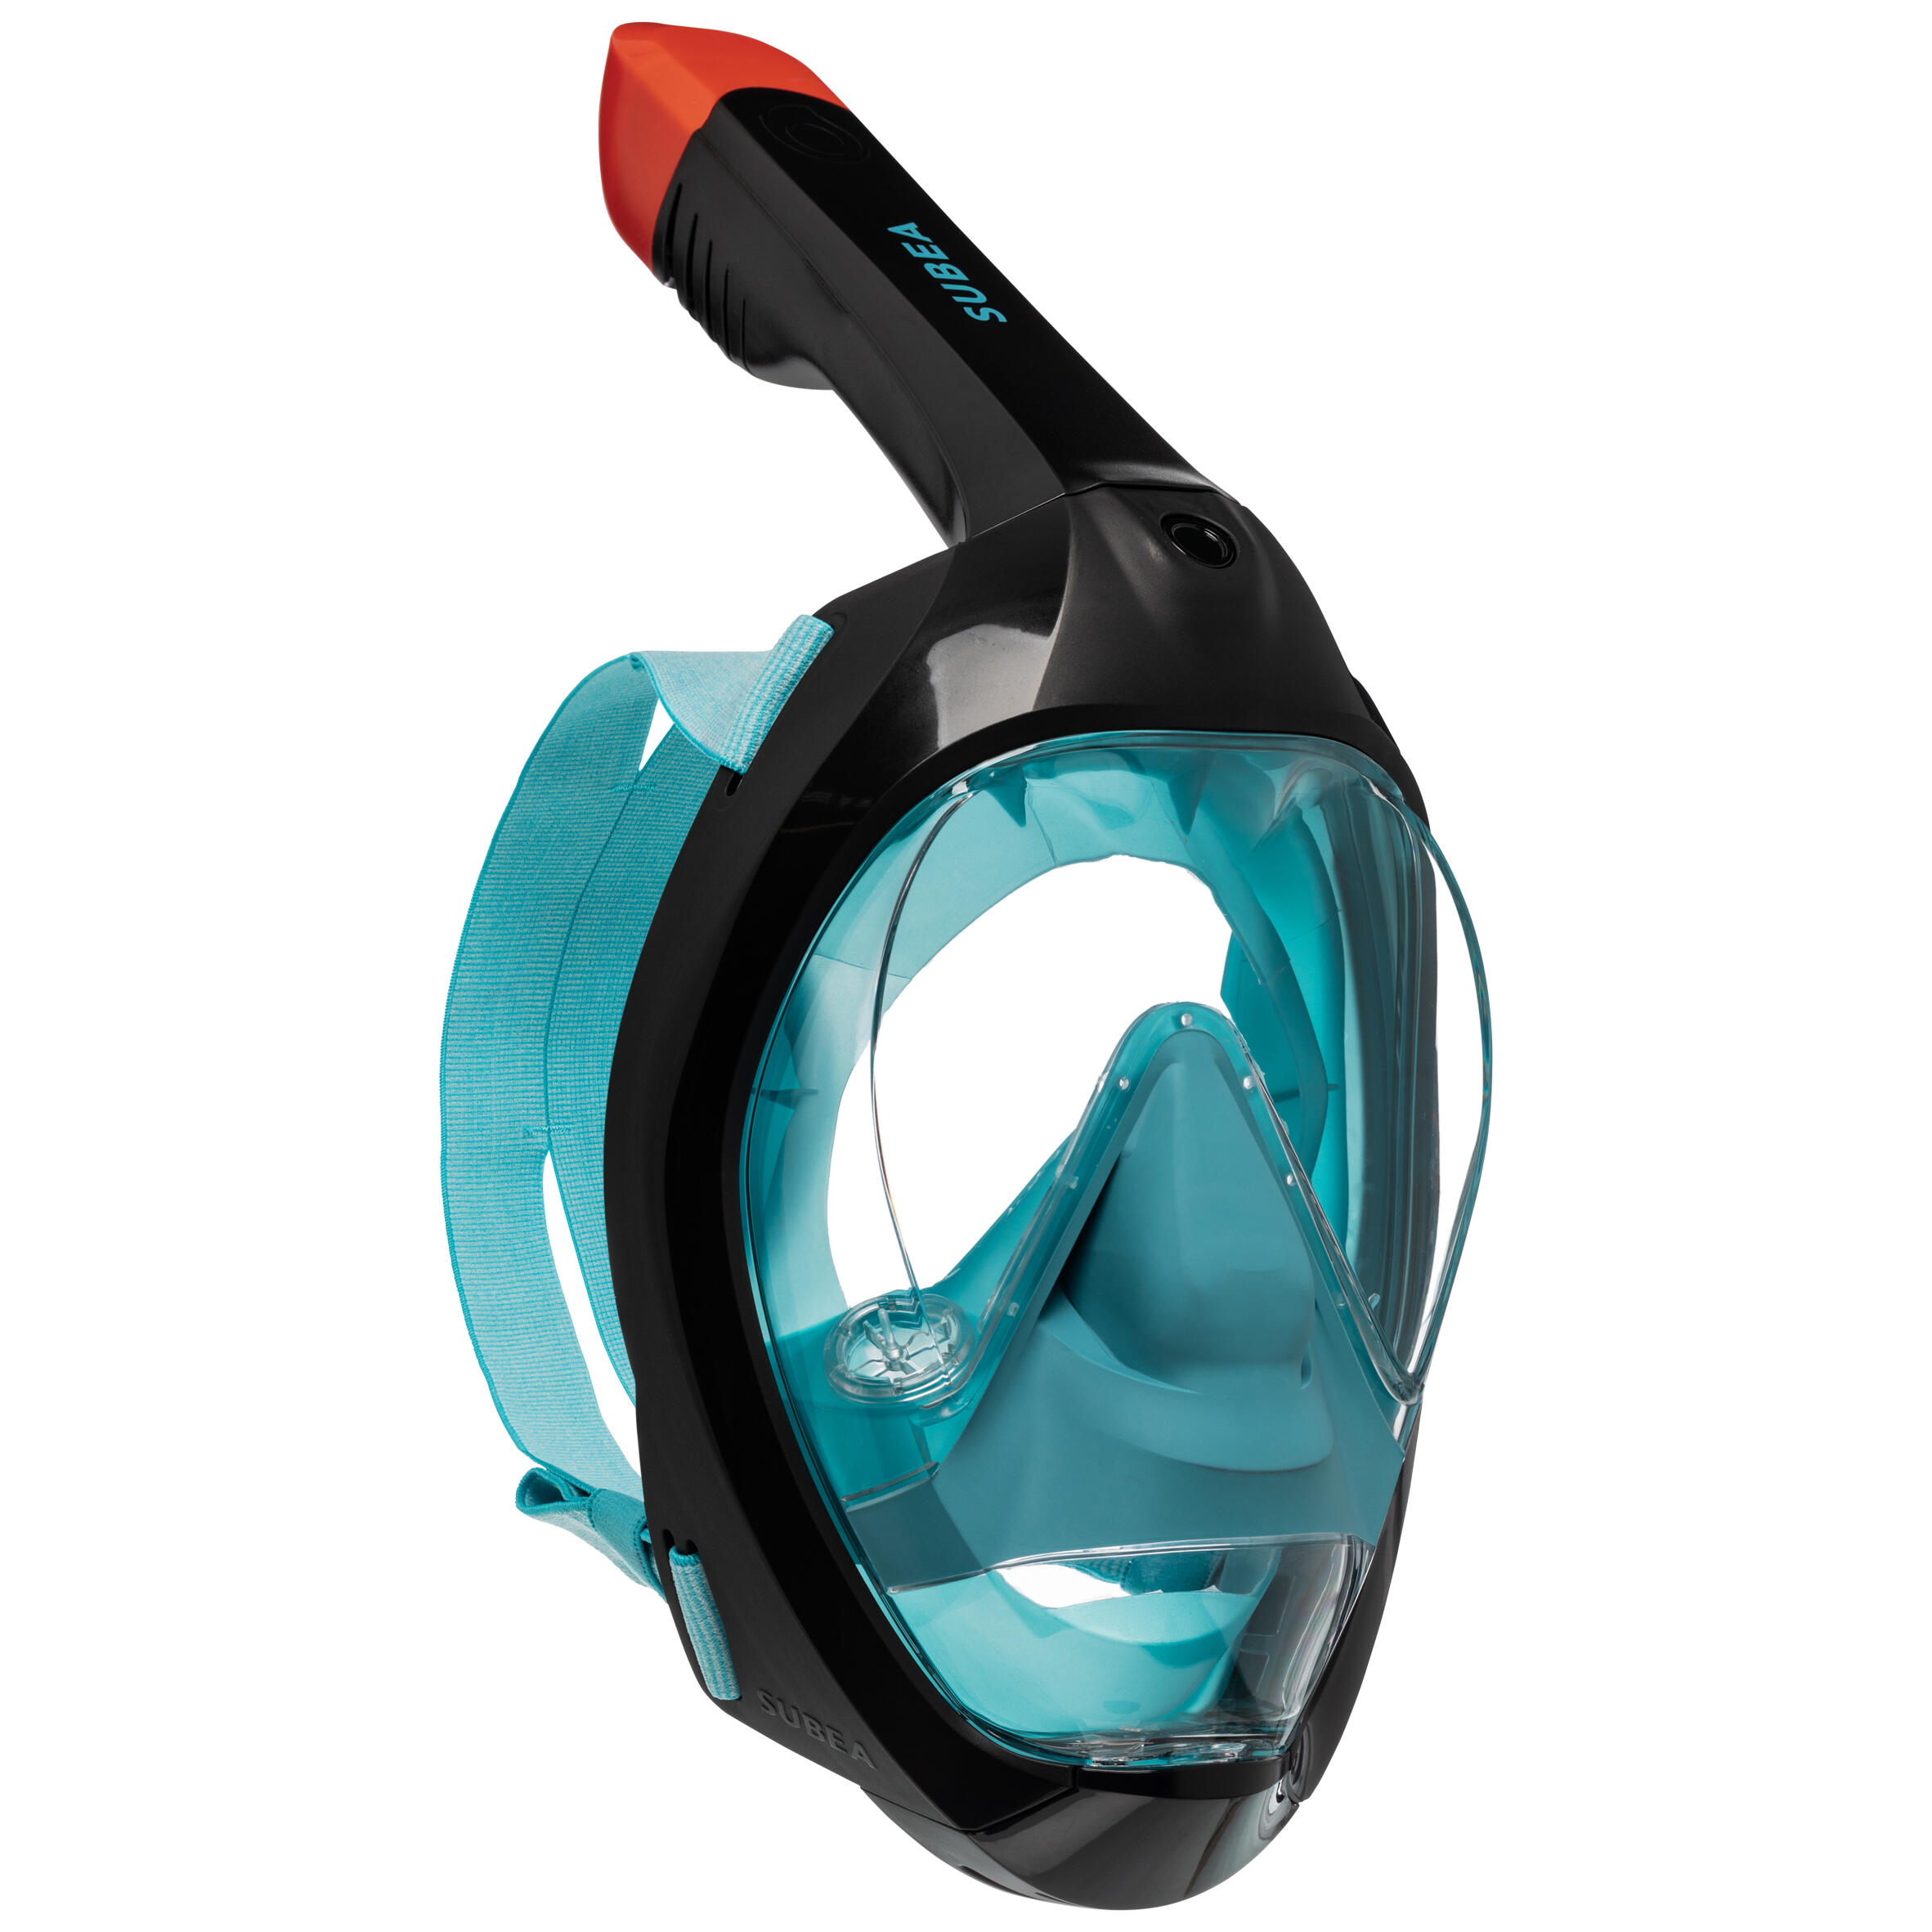 Emsmil Maschera da Snorkeling Panoramica Easybreath 180 gradi Panoramici Full Face Design di Respirazione Libera Maschere Subacquee Anti-Appannamento Anti Infiltrazioni Sacchetto Impermeabile per Telefono per Adulti e Bambini 